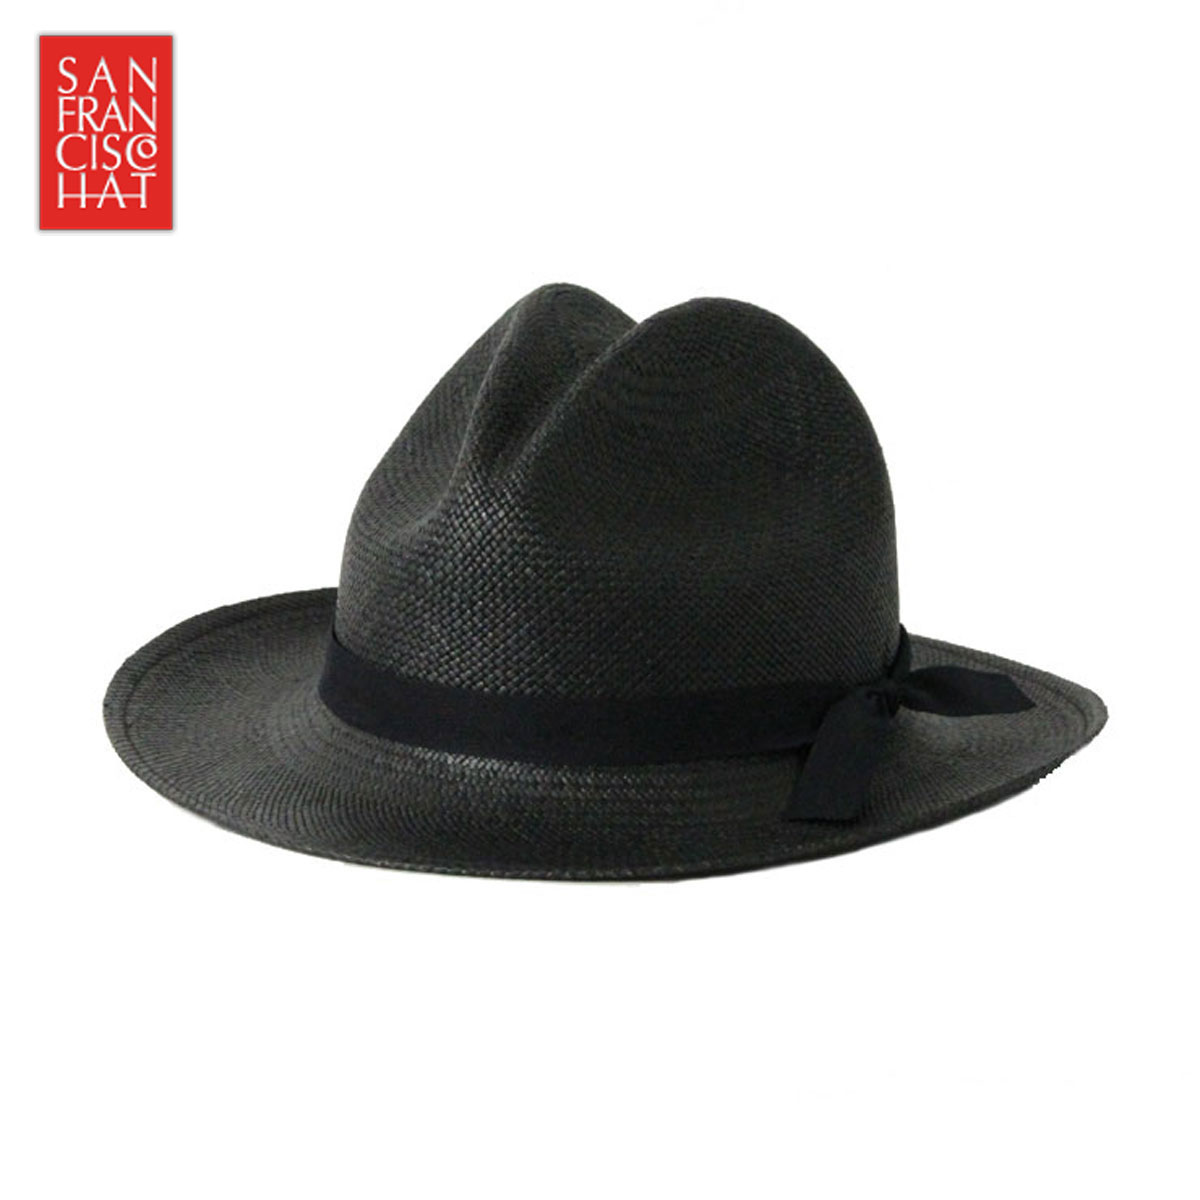 サンフランシスコハット SANFRANCISC HAT 正規販売店 正規品 帽子 ハット BRISA SANTA FE BLACK D15S25 父の日 プレゼント ラッピング